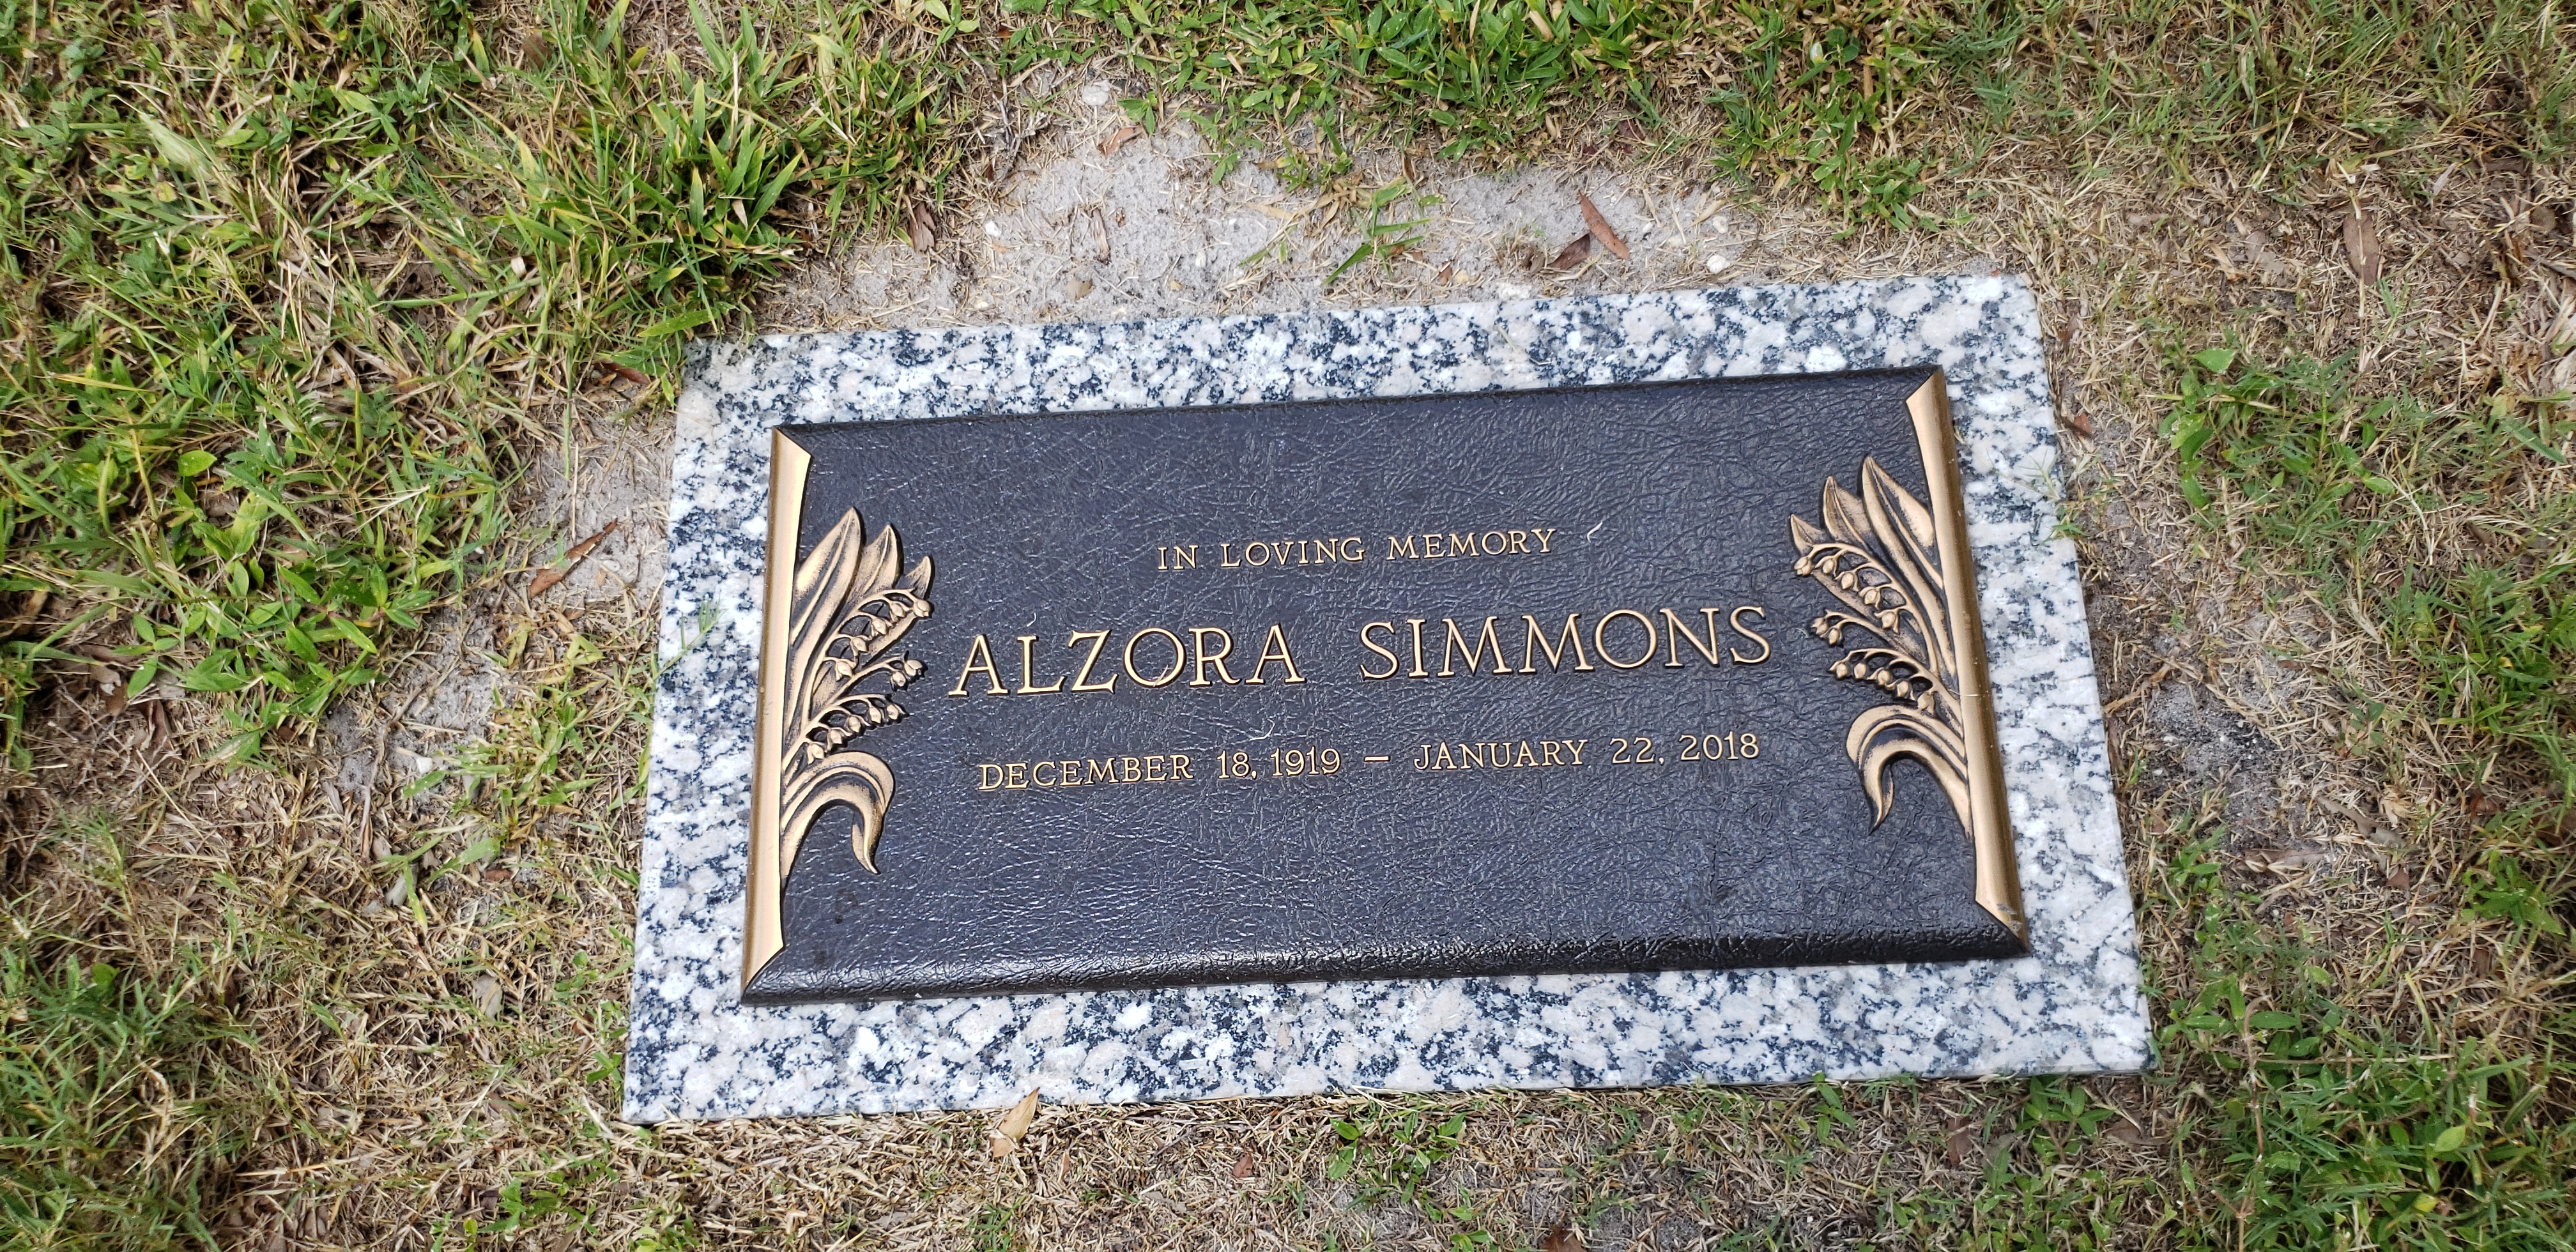 Alzora Simmons